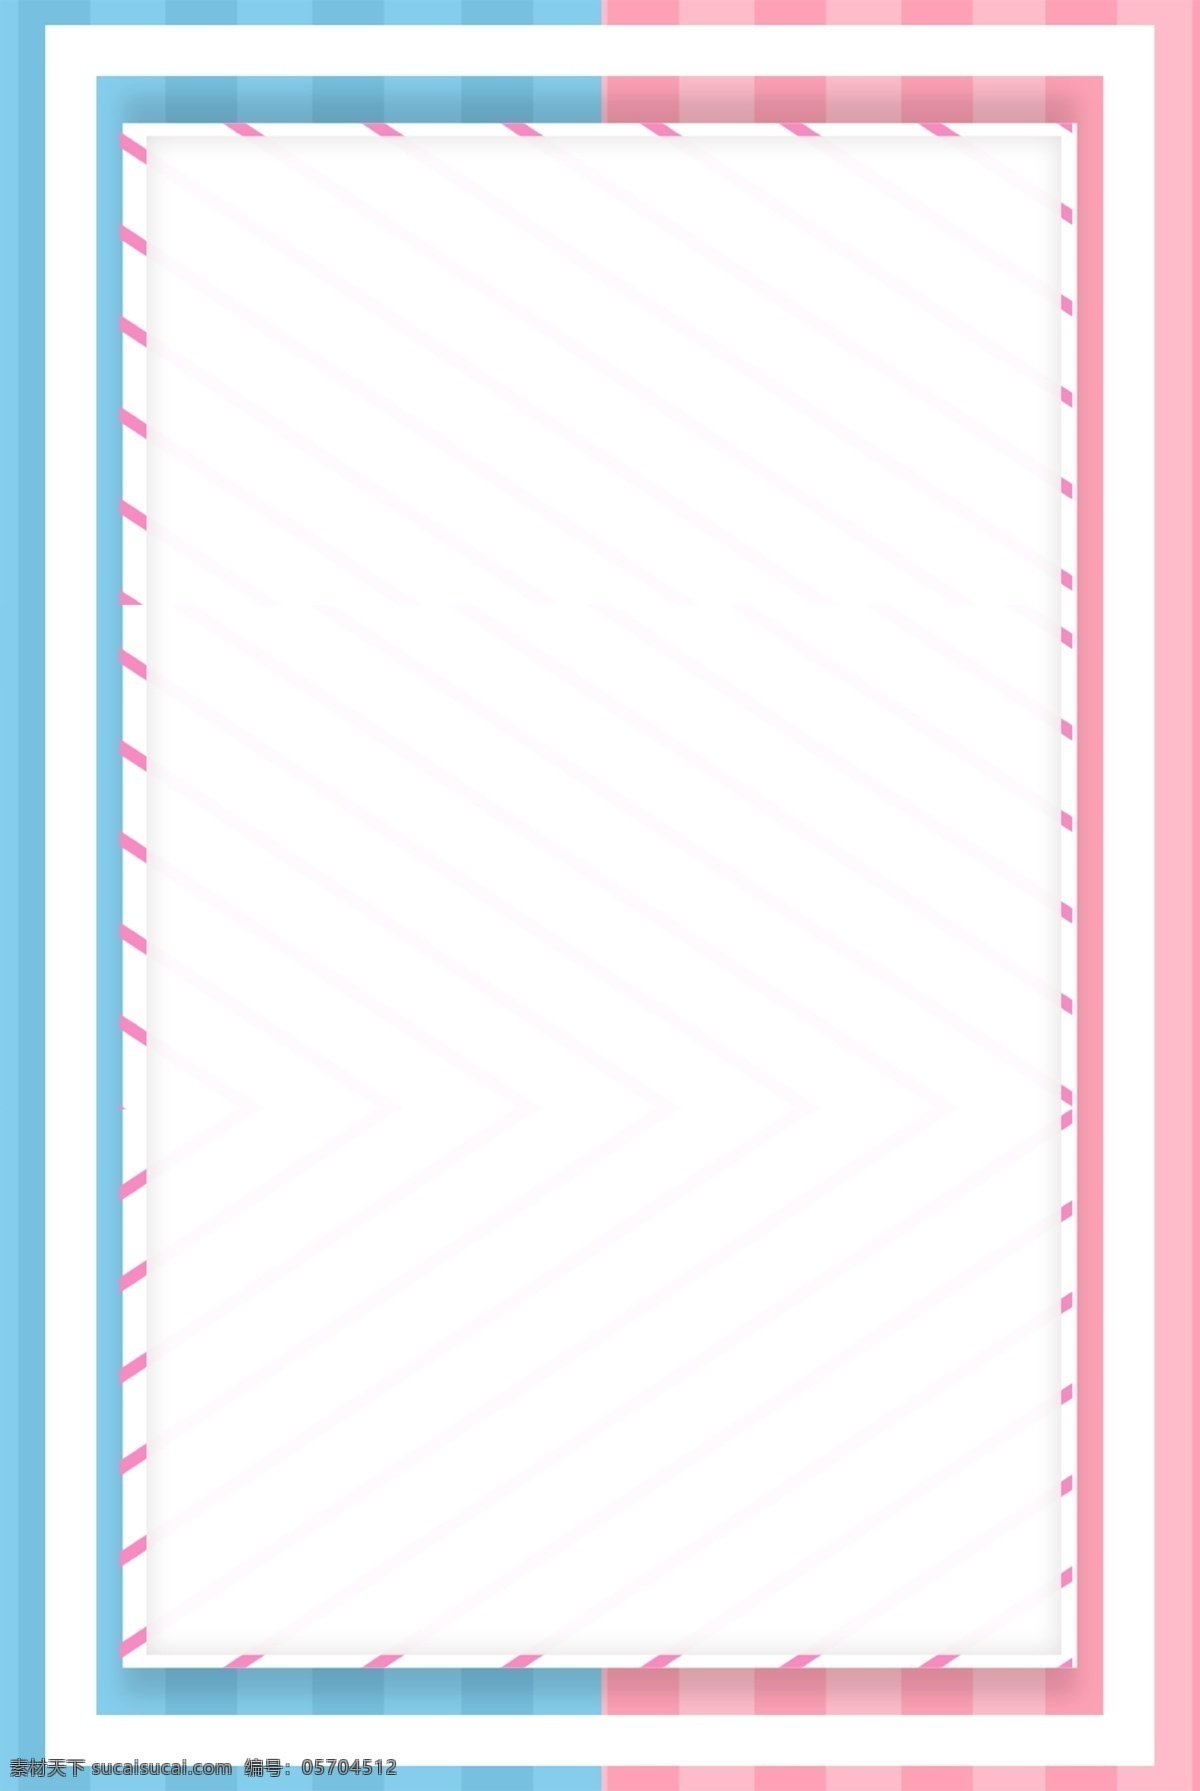 白底 蓝 粉色 条纹 边框 浅色 白色 粉红 线框 蓝色 条纹背景 纯色背景 纯色底纹 电商 淘宝背景 h5